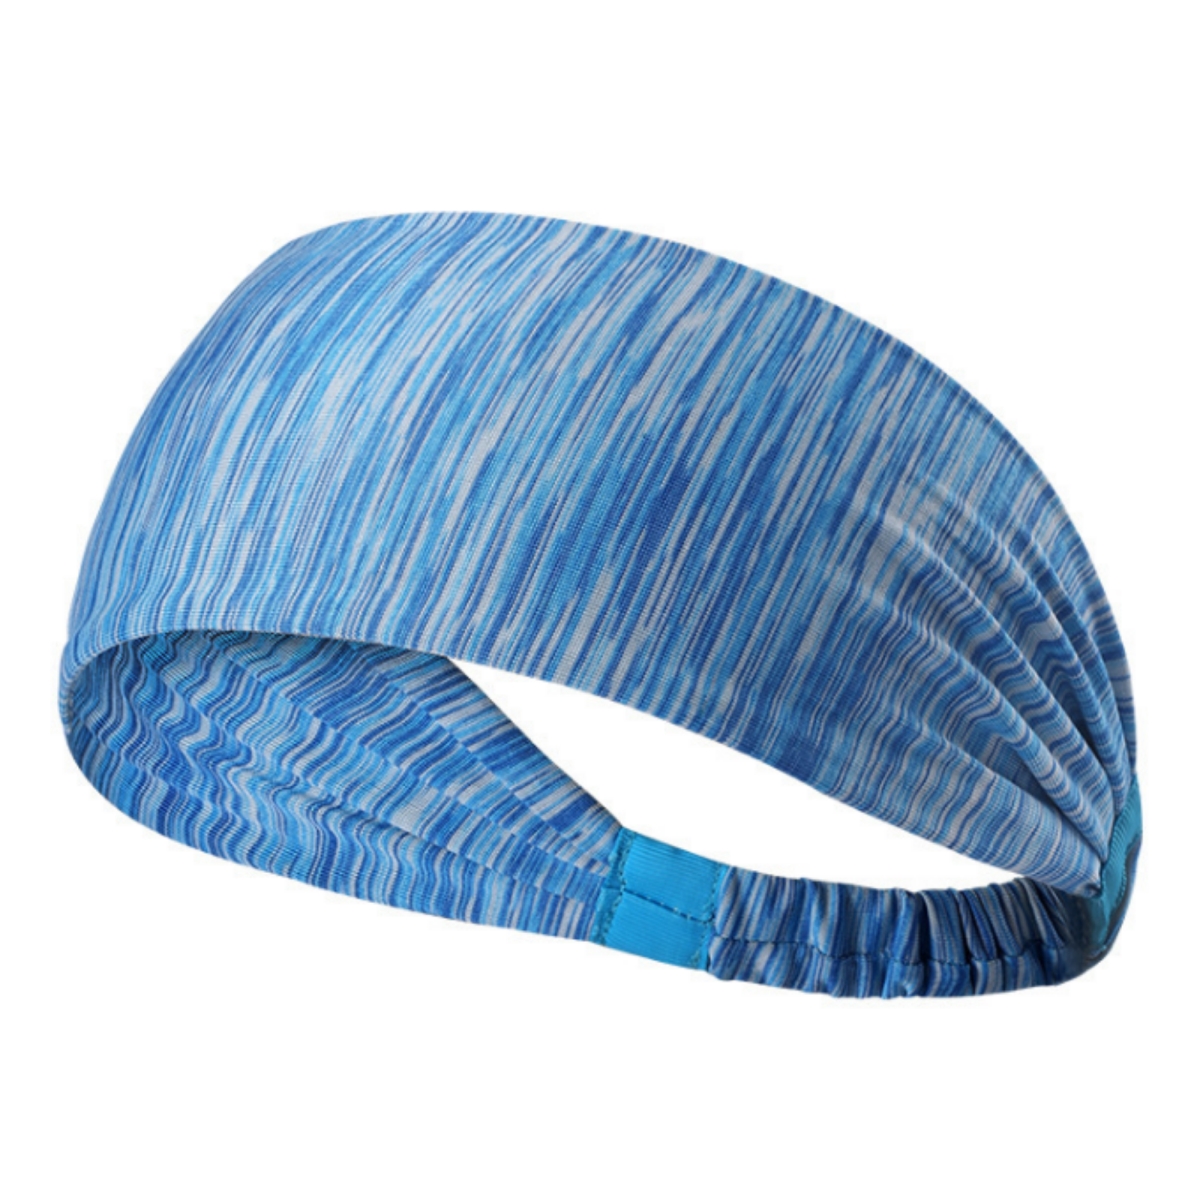 JG-HEADBND2-BLU Extra-Wide Sport & Fitness Sweat Wicking Fitness Headband, Blue